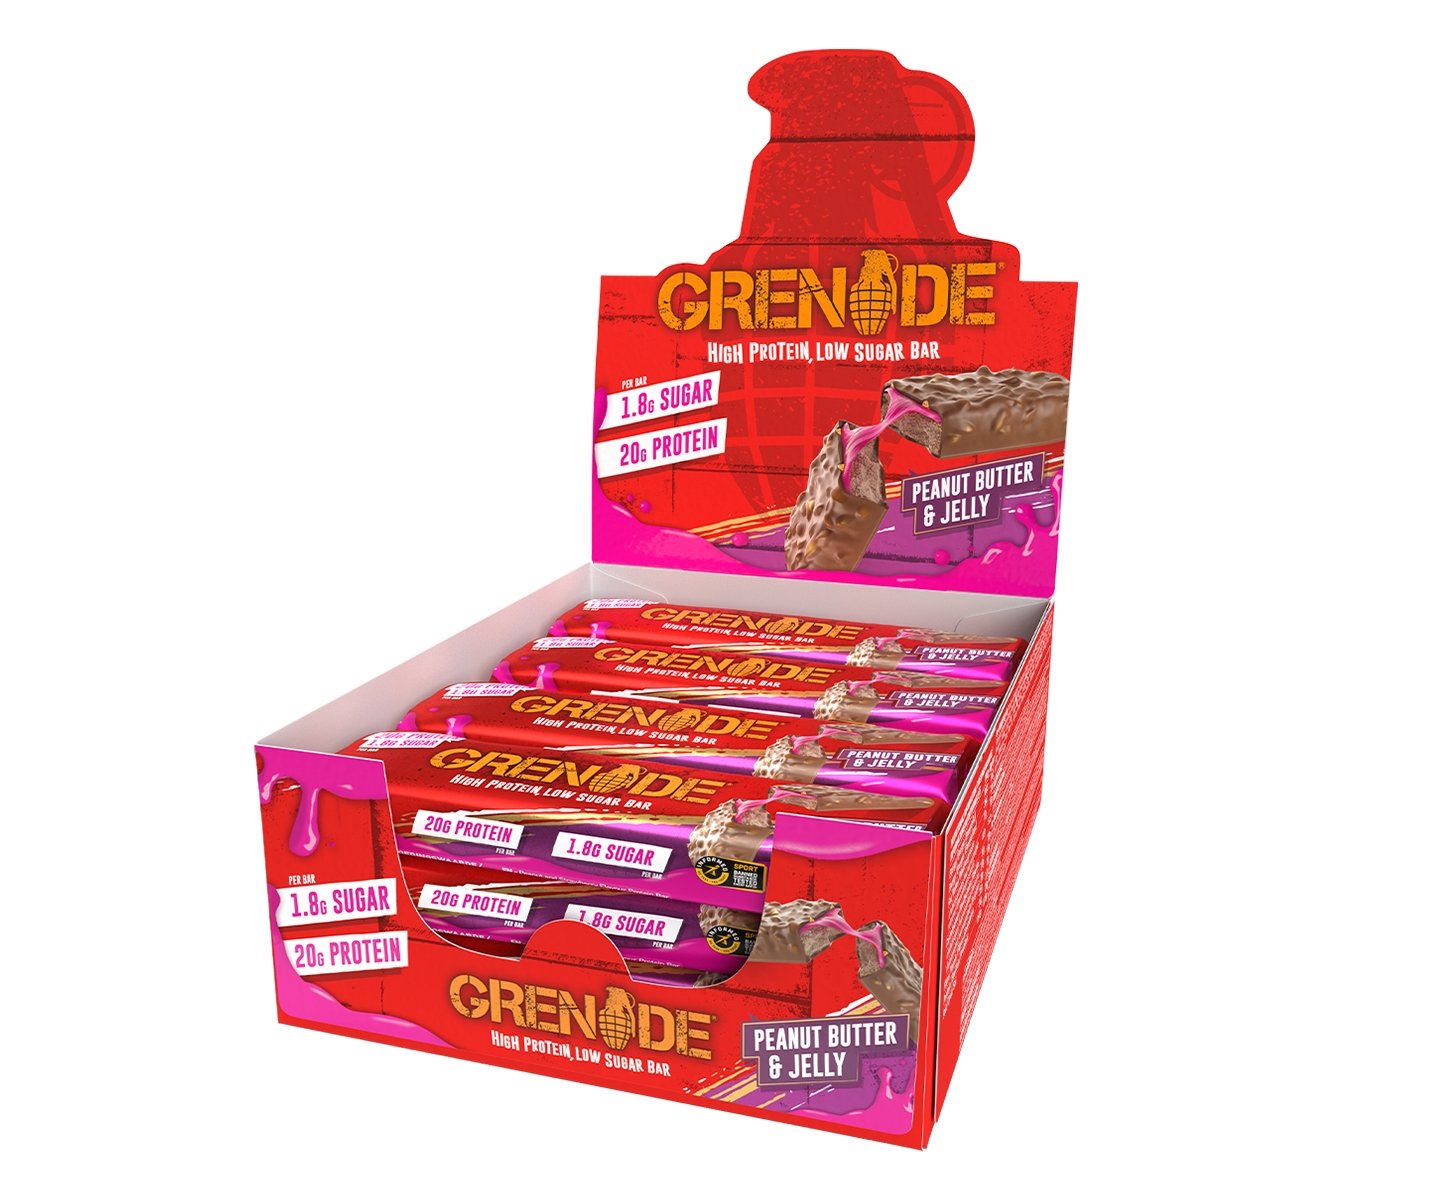 Grenade Carb Killa Manteiga de Amendoim e Geleia Low Sugar Bar - 12 x 60g Bars - theskinnyfoodco